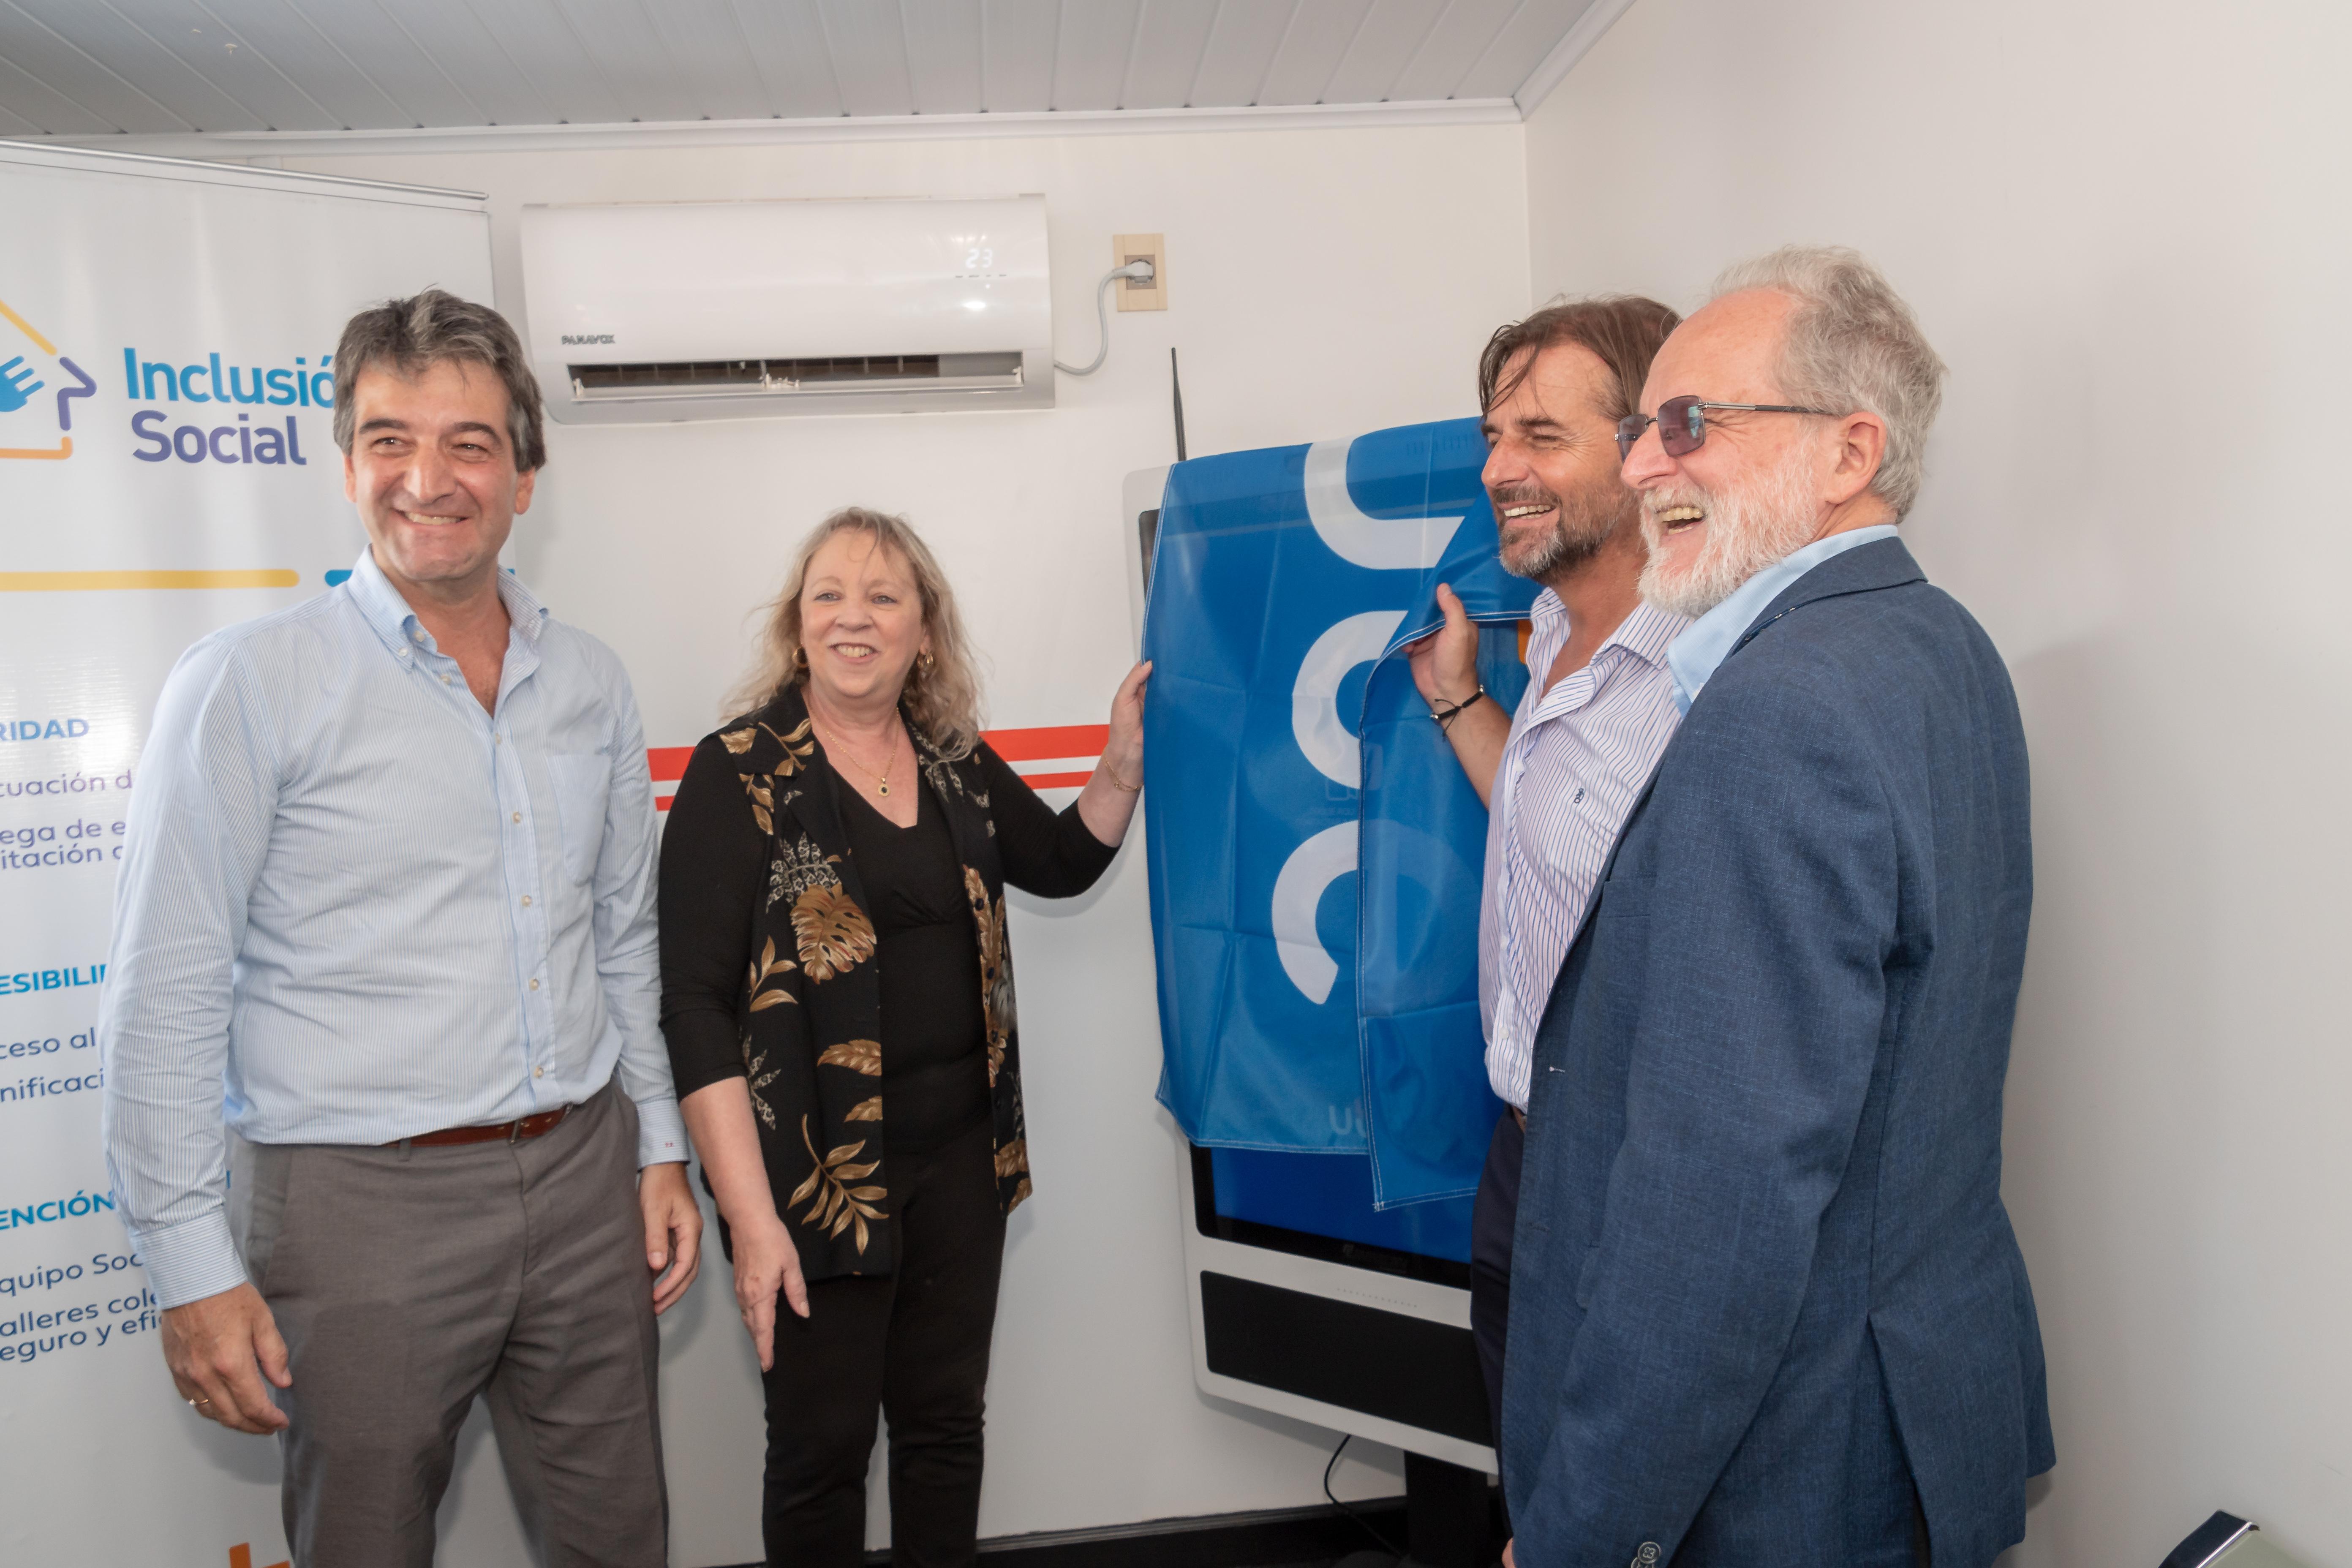 Nuevo Centro de Atención de UTE en recién inaugurado Polo de Servicios en Casavalle